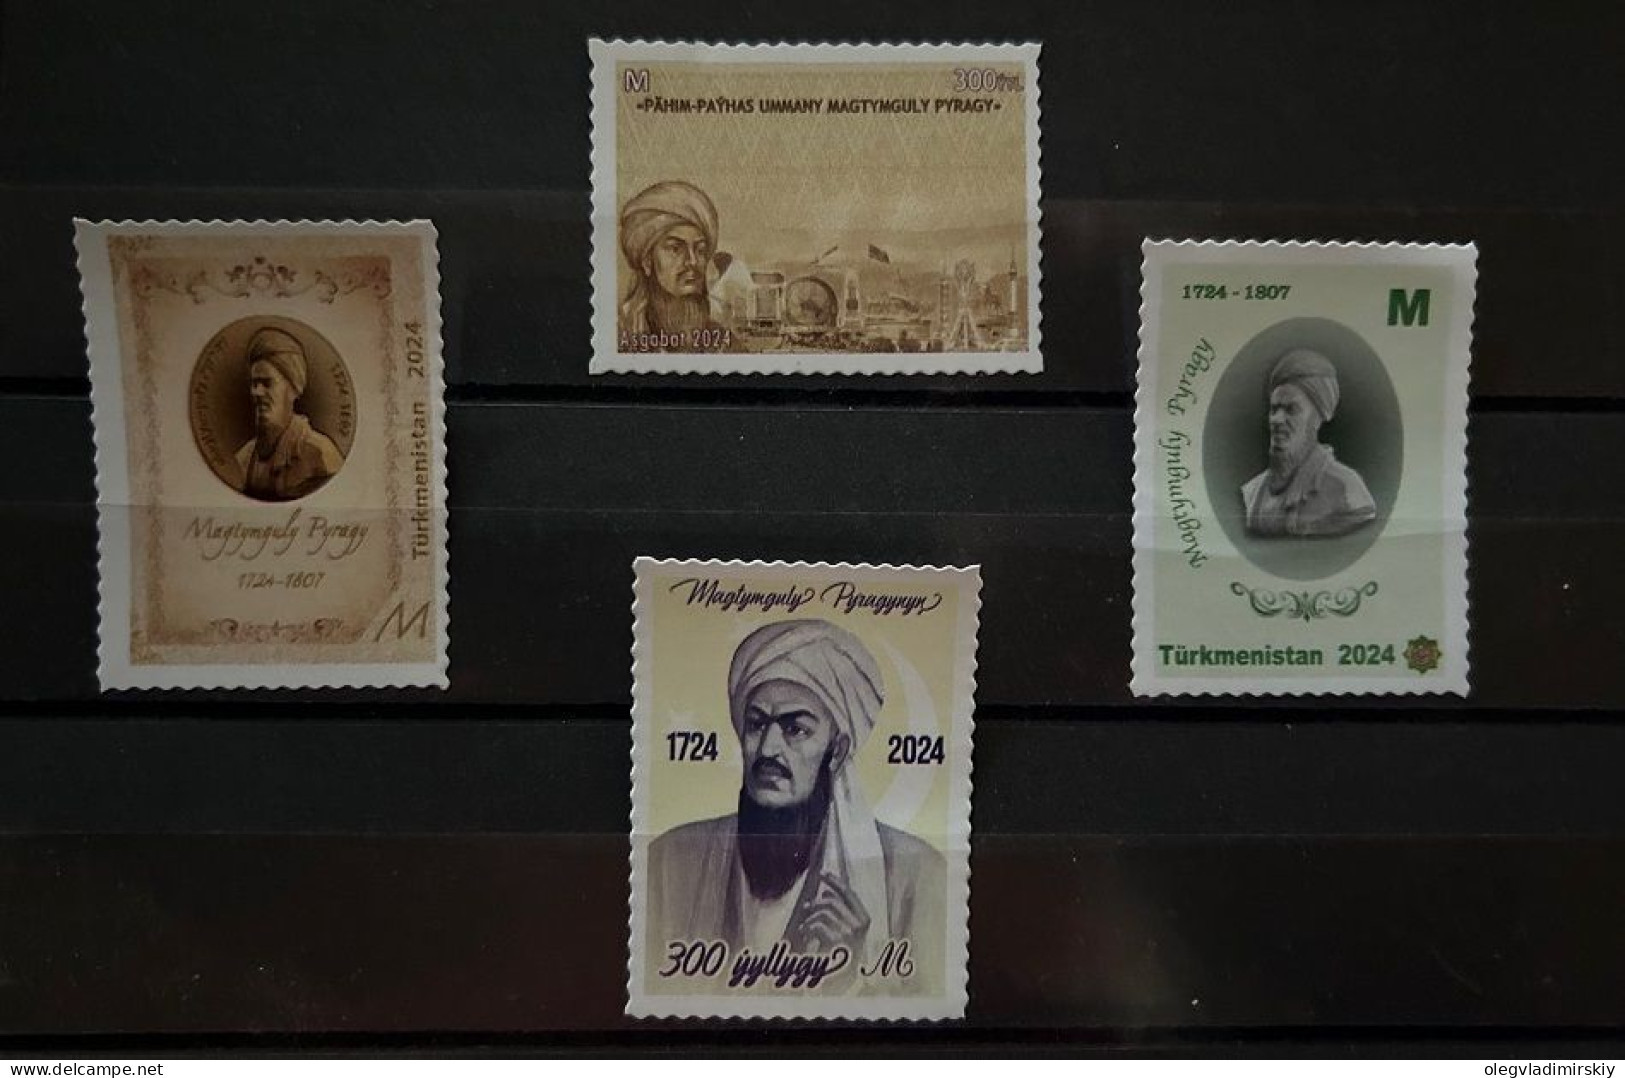 Turkmenistan 2024 Magtymguly Maxdumqoli Faraği مخدومقلی فراغی Great Poet Philosopher Set Of 4 Stamps MNH - Turkmenistan